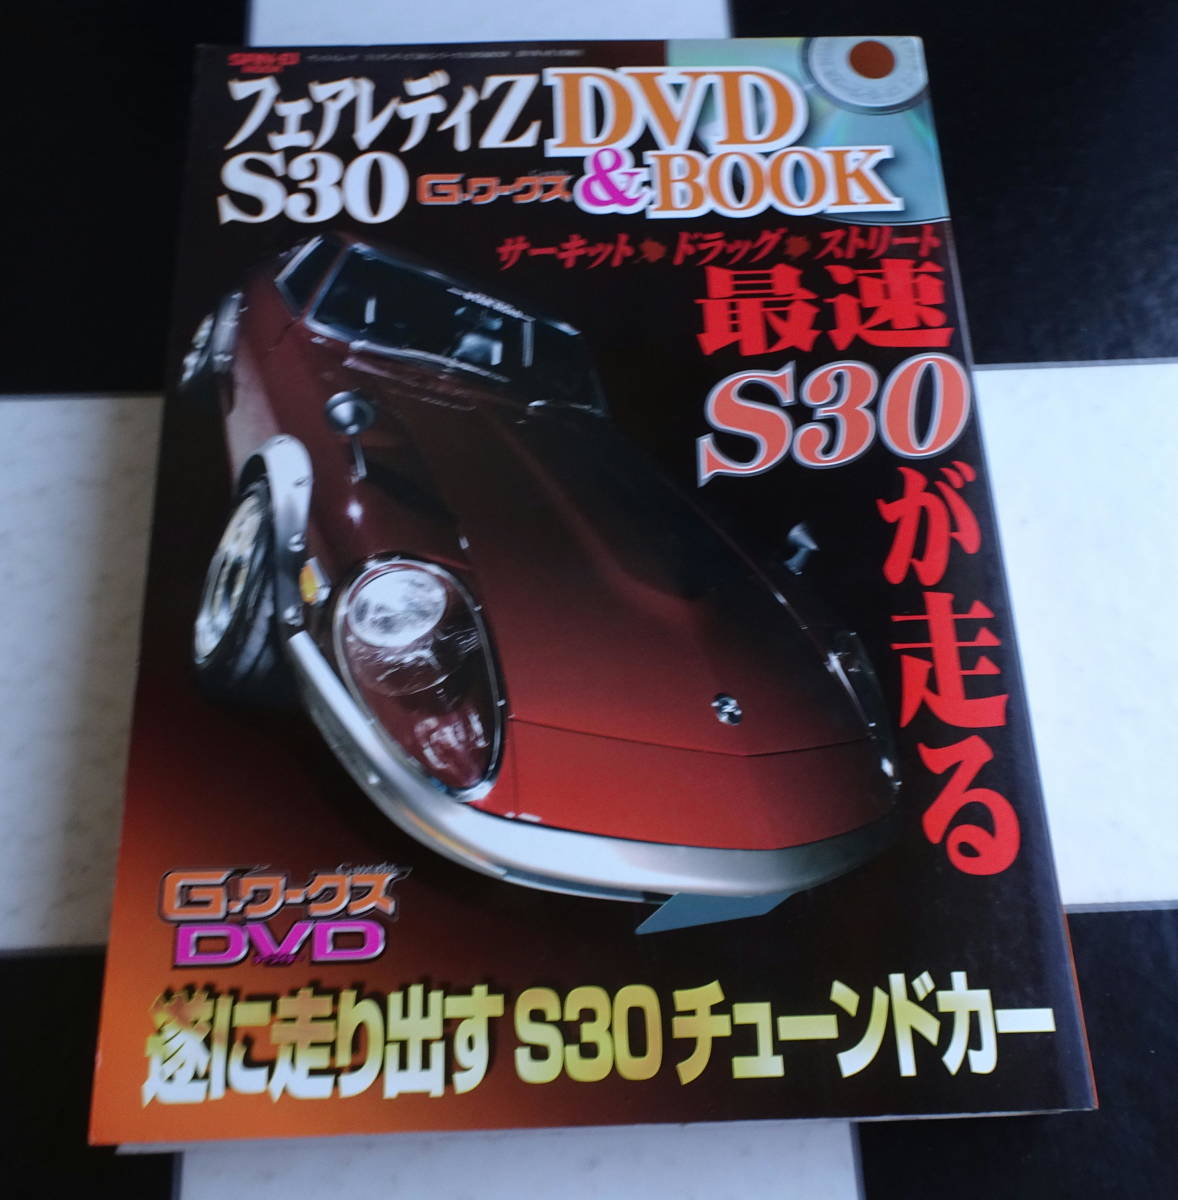 フェアレディＺ S30 Ｇ-ワークス DVD&BOOK(SAN-EI MOOK) あのマシンの 